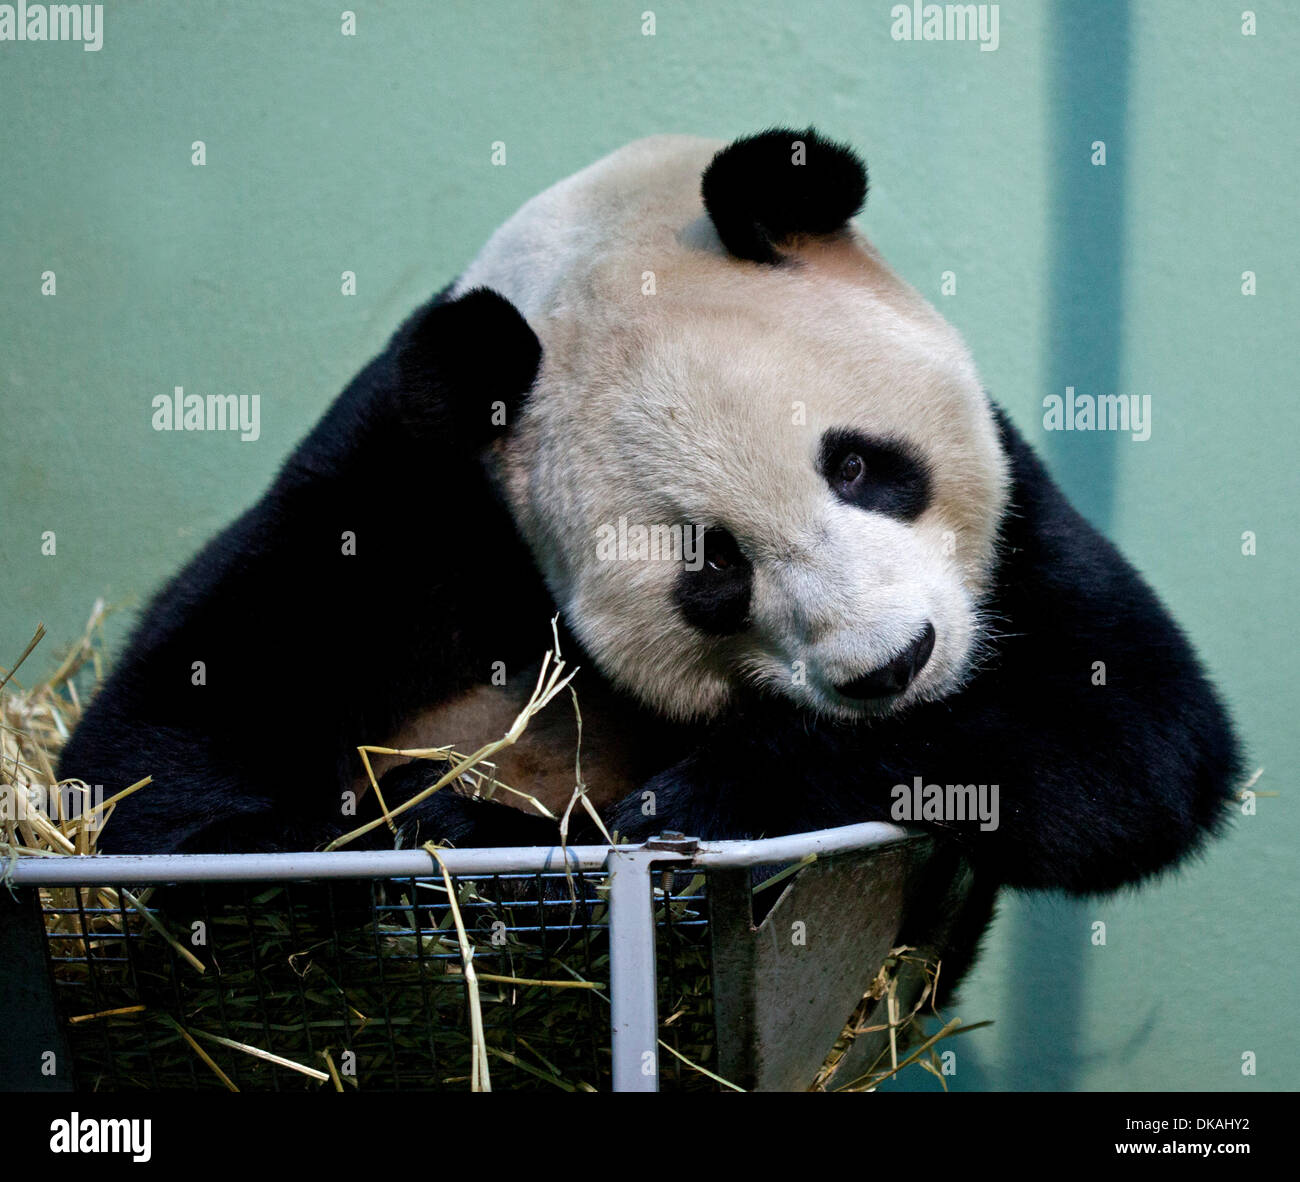 Edinburgh Zoo, Schottland. 4. Dezember 2013. 2. Jahrestag der zwei großen Pandas Tian Tian und Yang Guang im Zoo von Edinburgh auf einer 10-Jahres-Darlehen aus China empfangen werden. Stockfoto